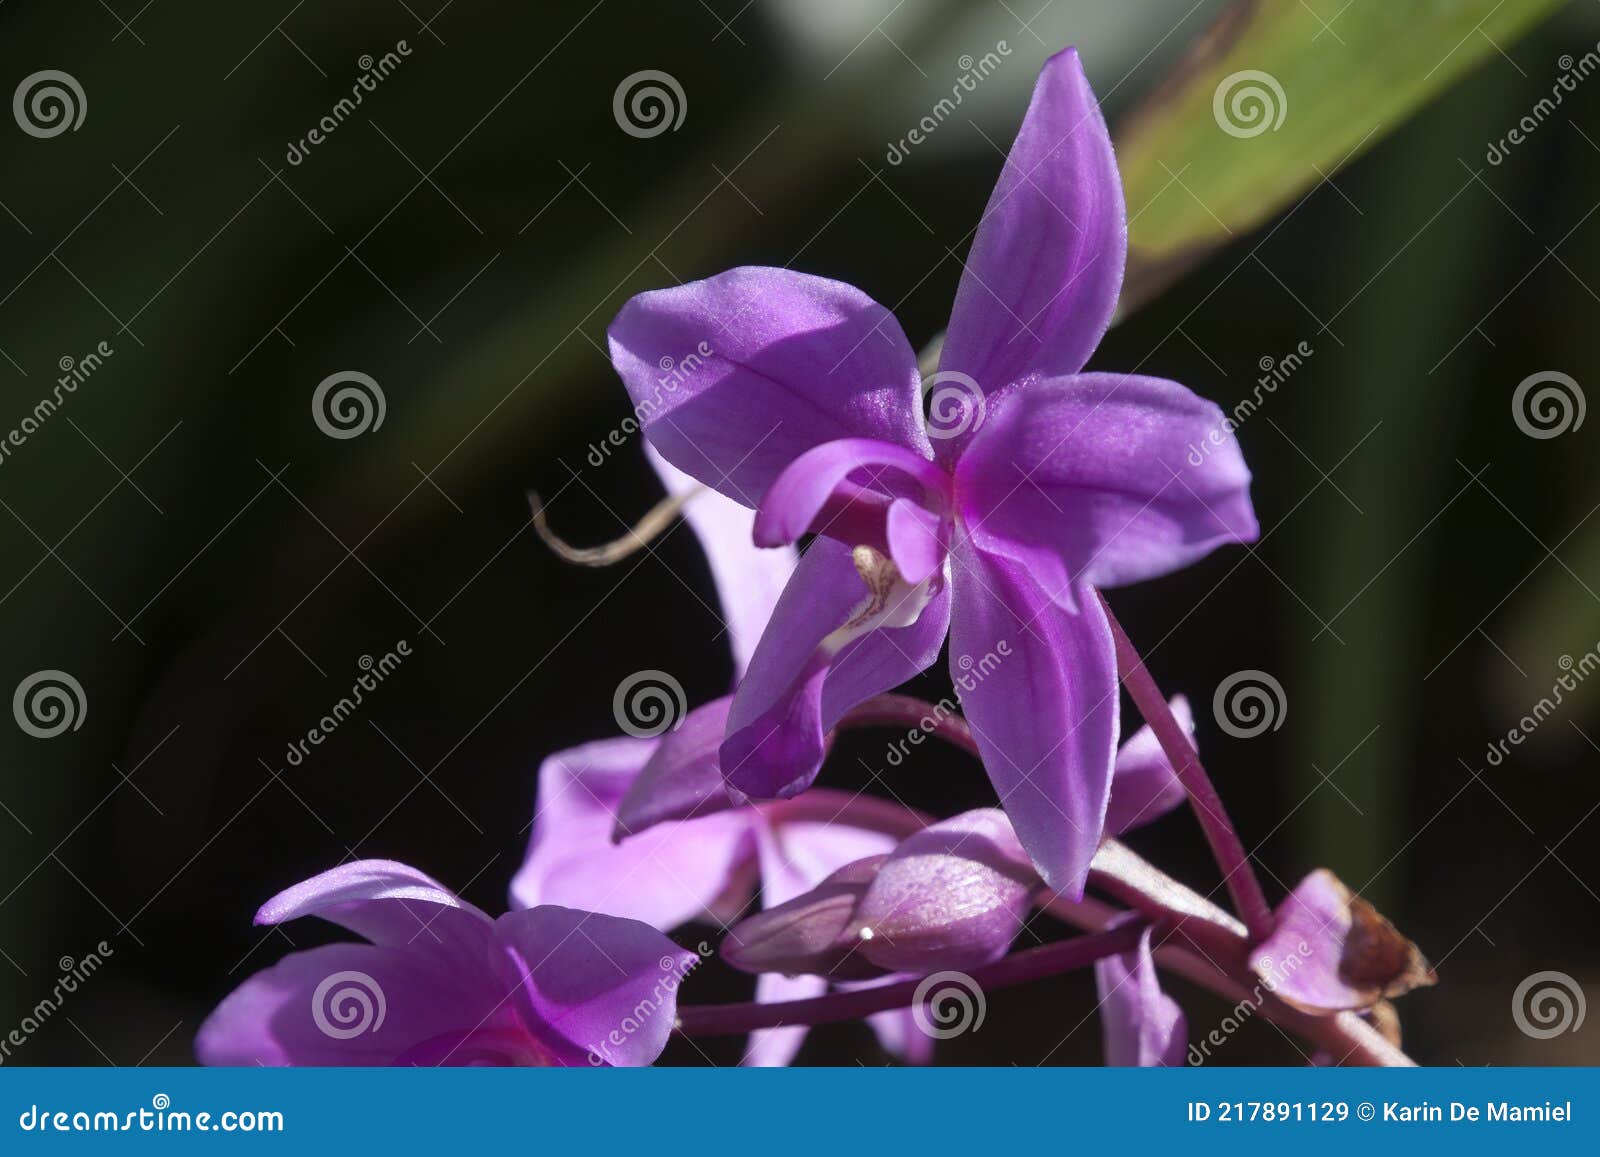 Caule De Flor De Uma Espatolottis Plicata Ou De Uma Orquídea Moída Púrpura  Imagem de Stock - Imagem de filial, flora: 217891129